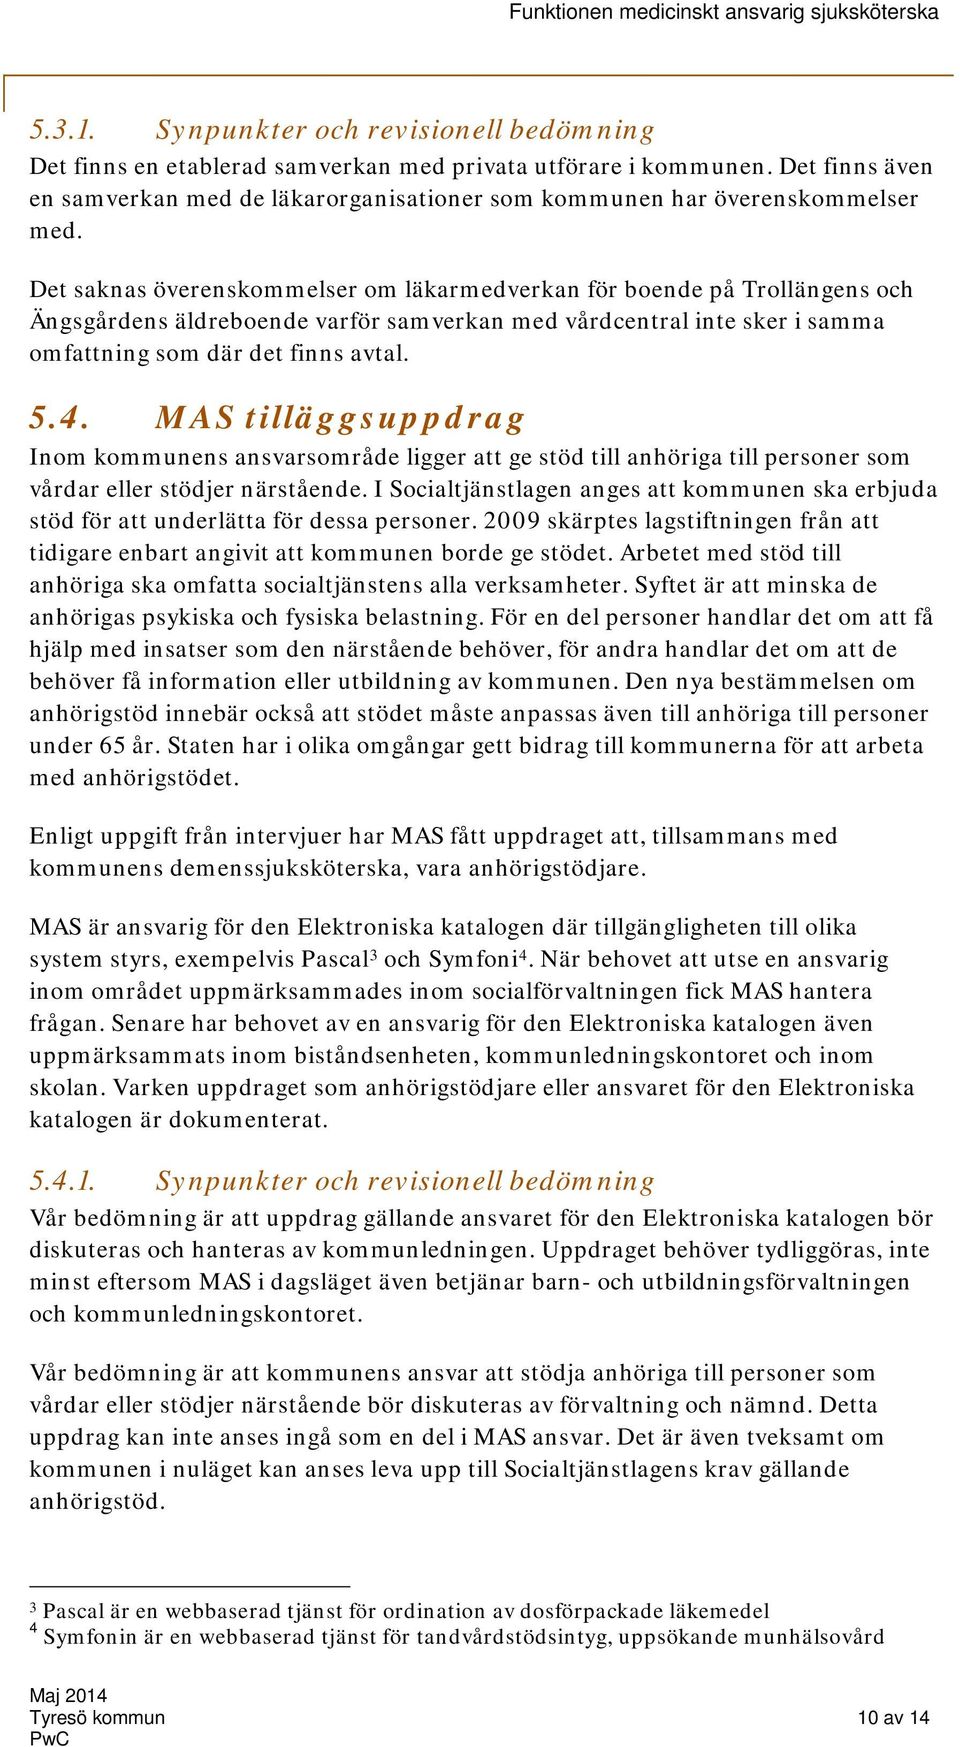 Det saknas överenskommelser om läkarmedverkan för boende på Trollängens och Ängsgårdens äldreboende varför samverkan med vårdcentral inte sker i samma omfattning som där det finns avtal. 5.4.